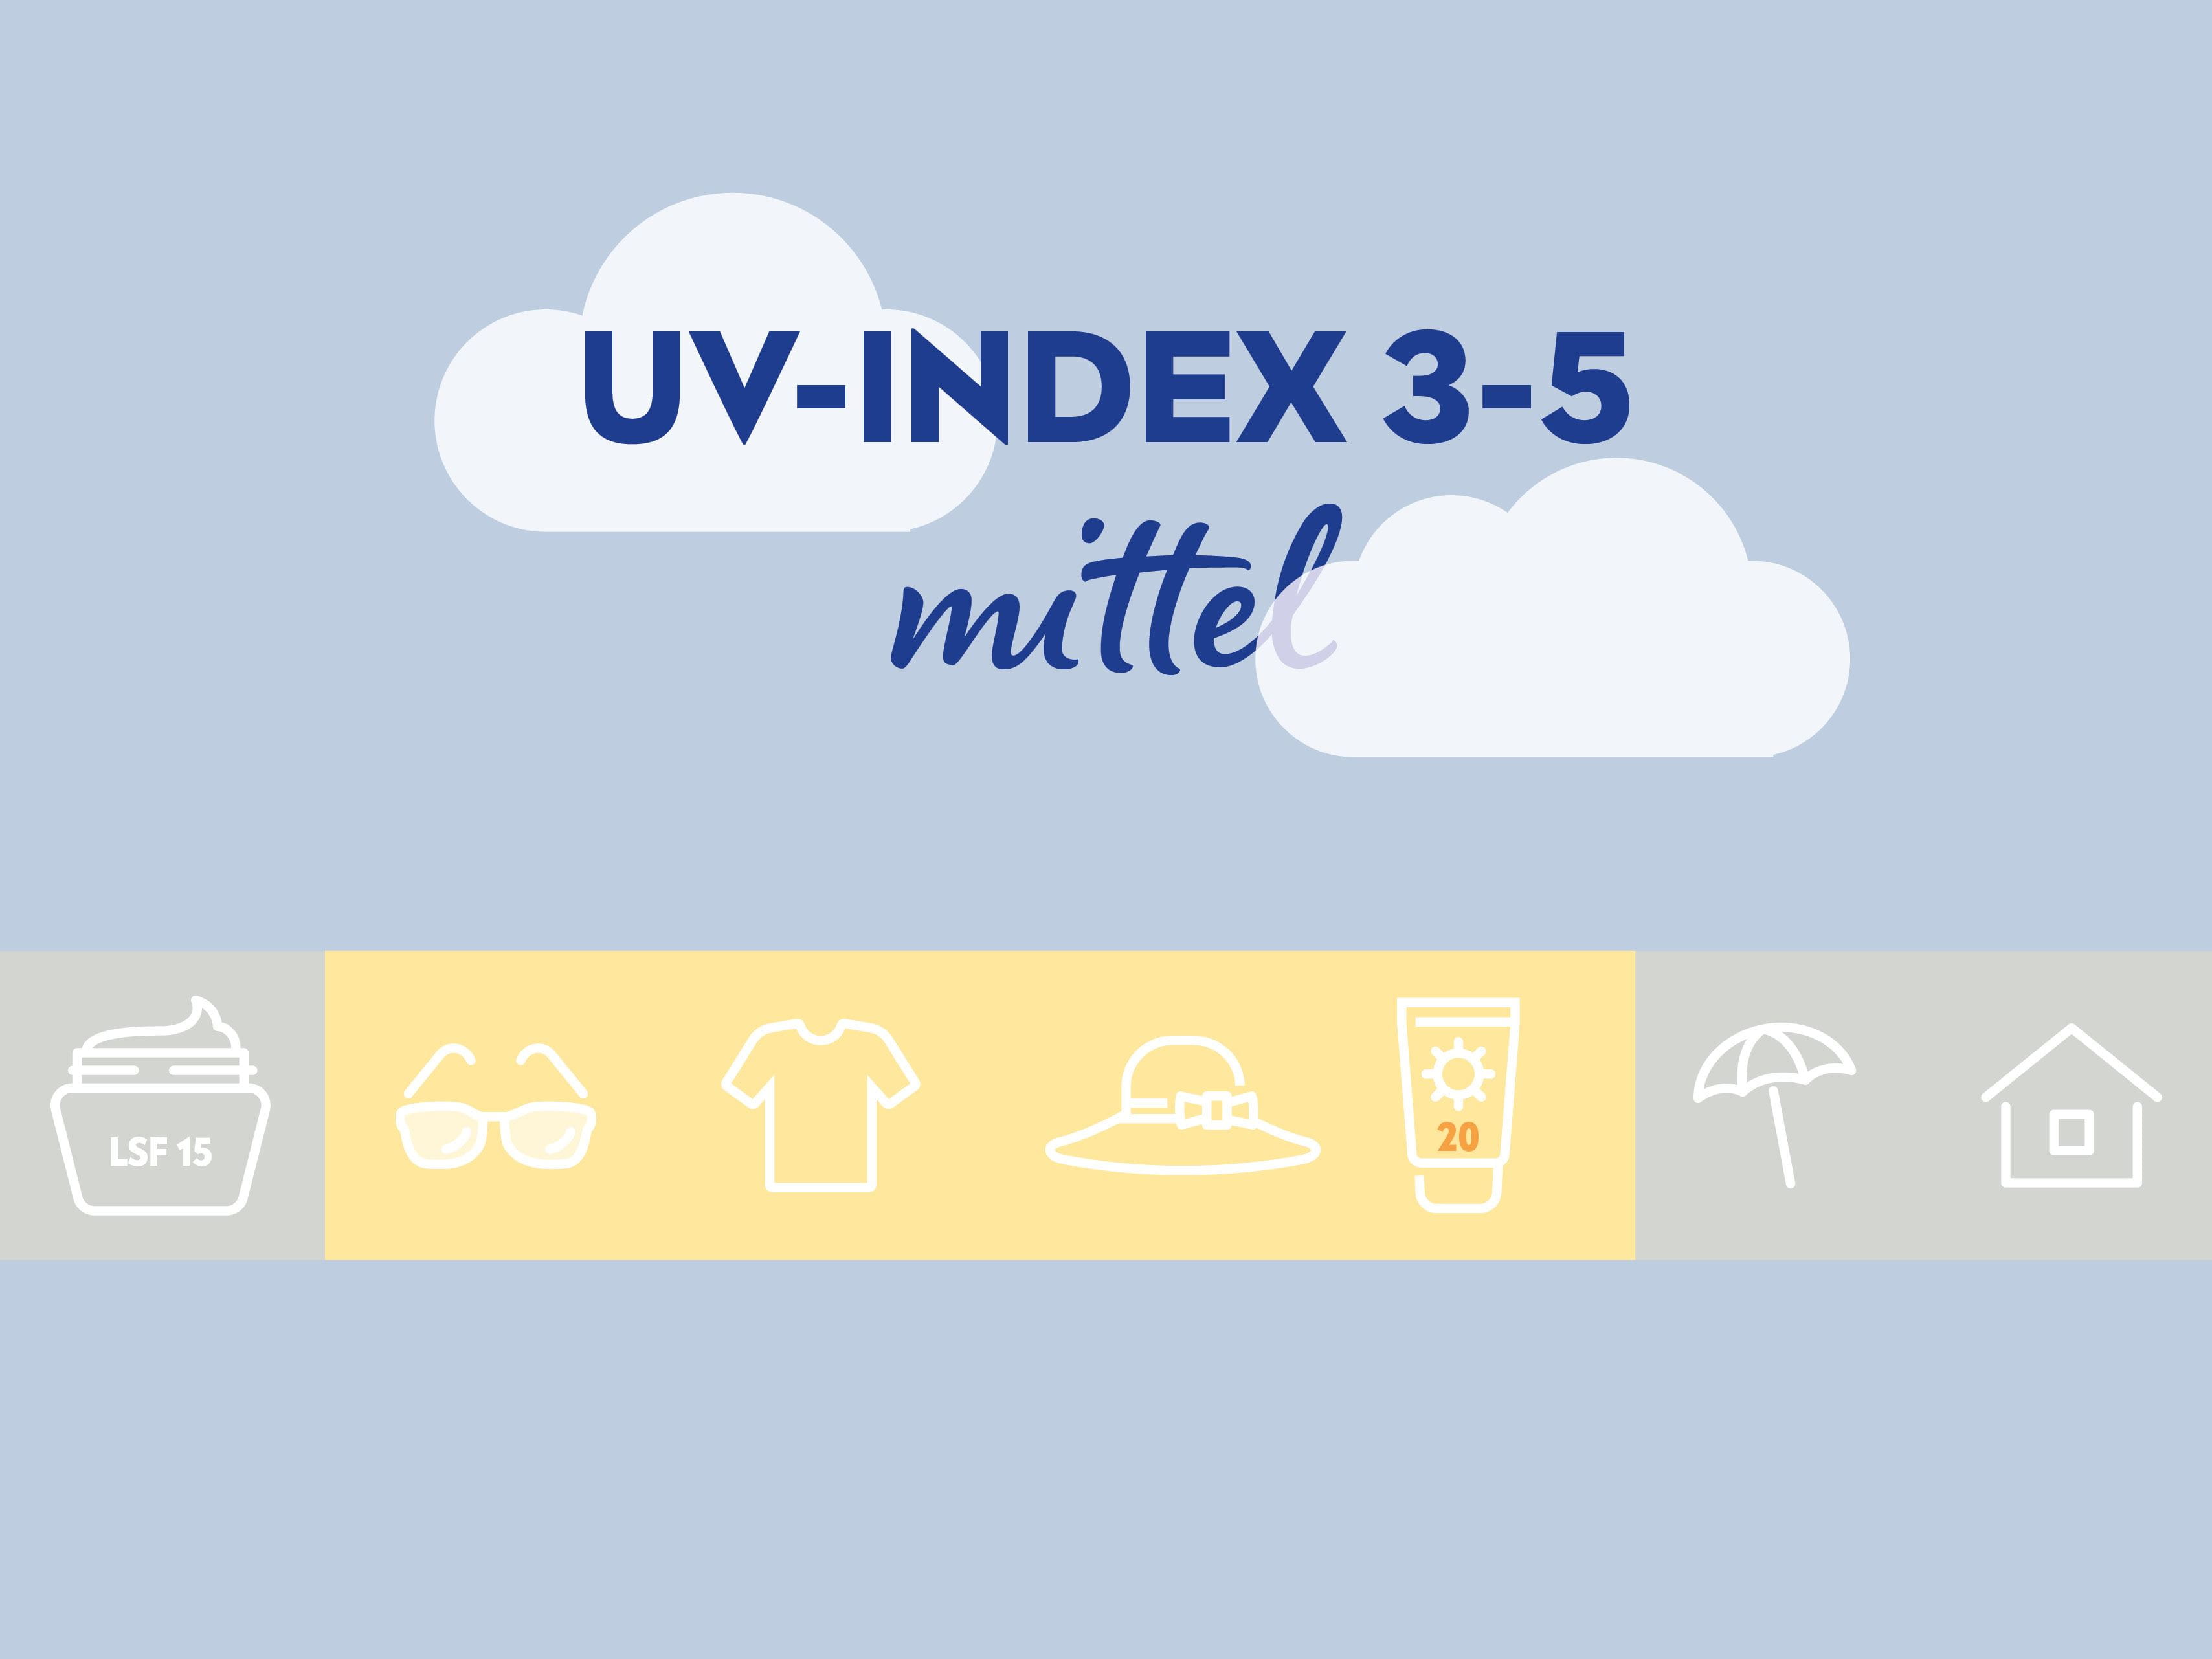 Bei einem mittleren UV-Index von 3-5 sollte man Sonnenschutz mit mindestens LSF 20 sowie Sonnenbrille, Kleidung und Hut tragen.